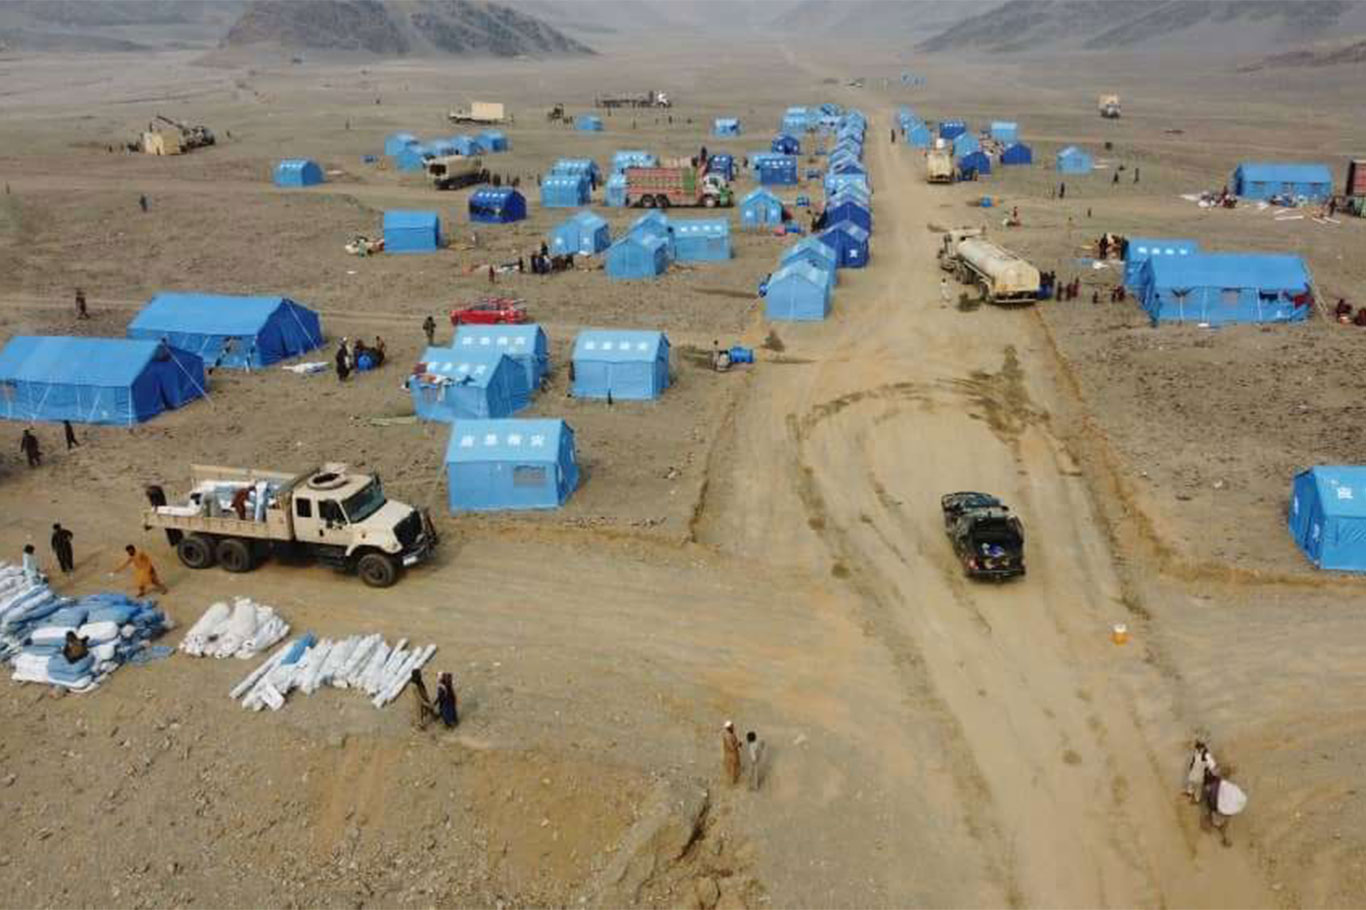 Ülkelerine geri dönen Afganlar için acil yardım çağrısı